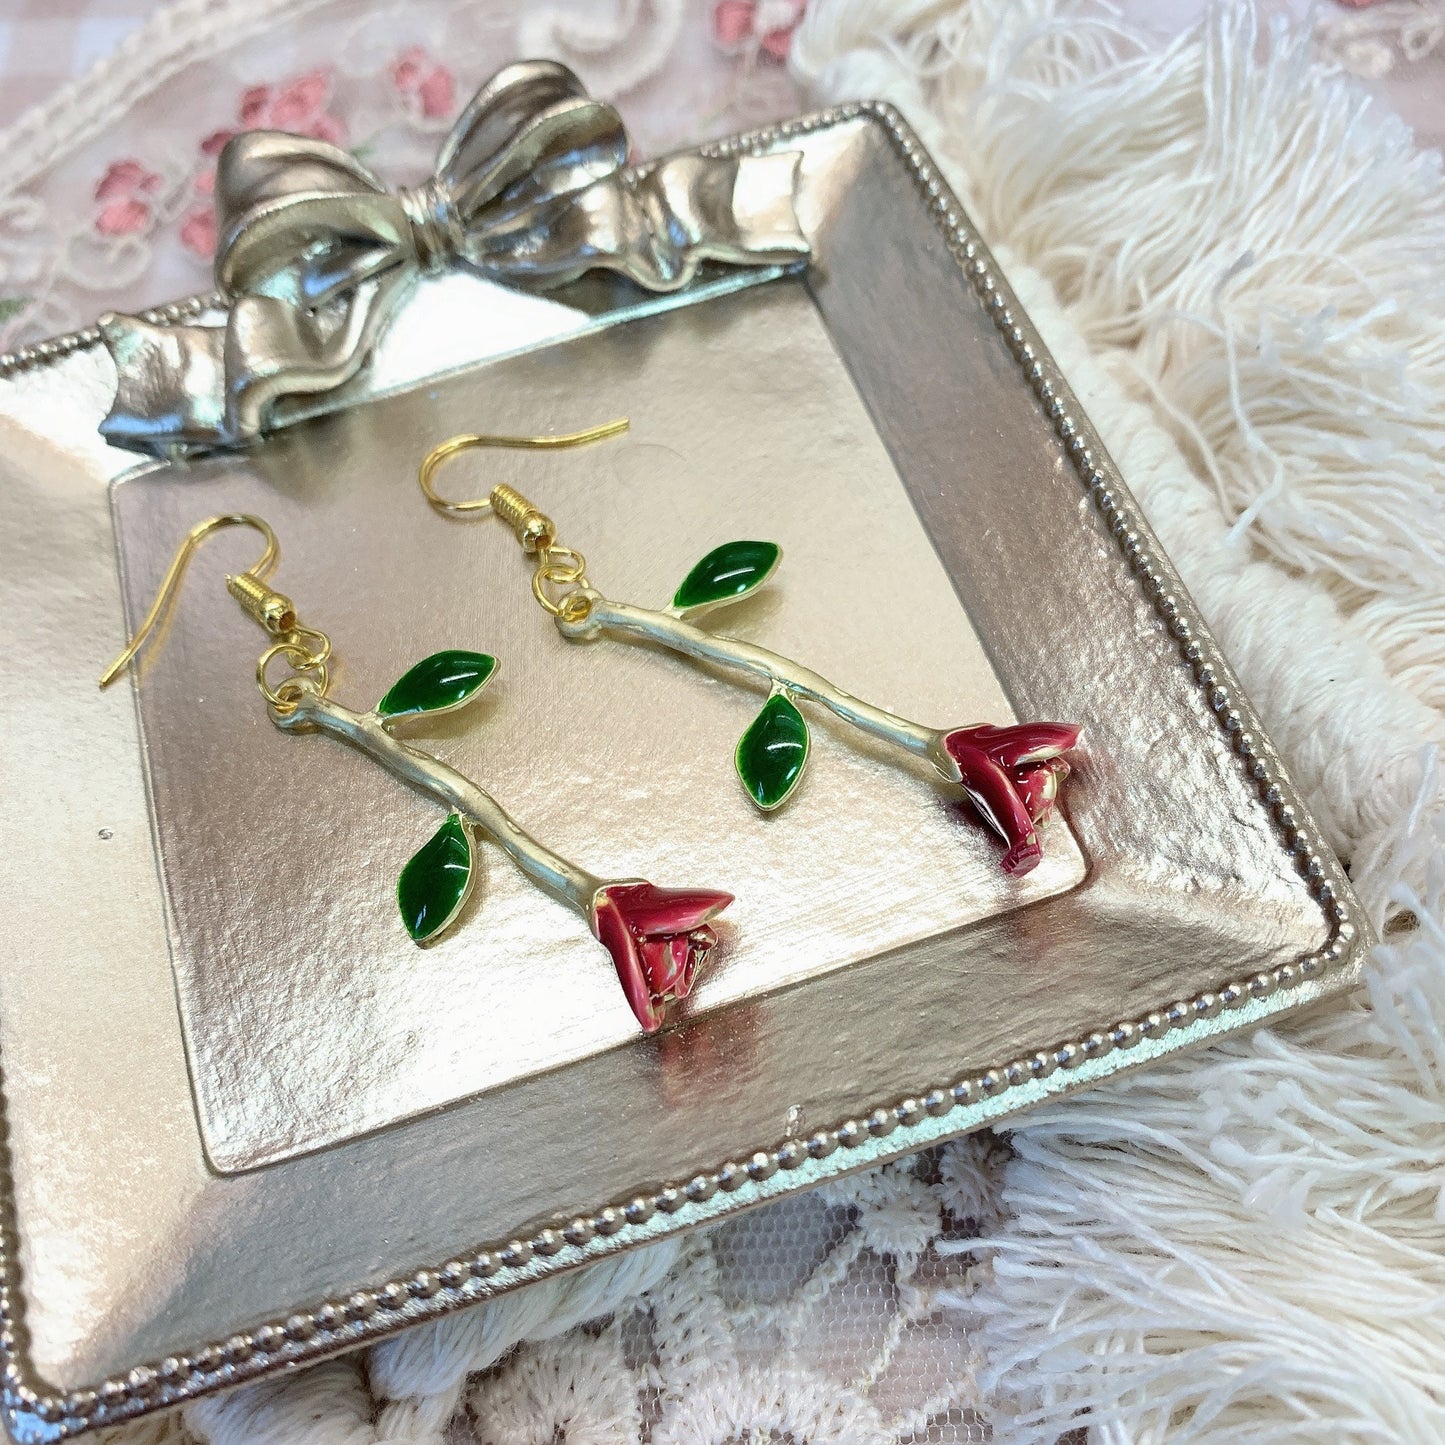 Moya handmade earrings「redness of the skin rose」